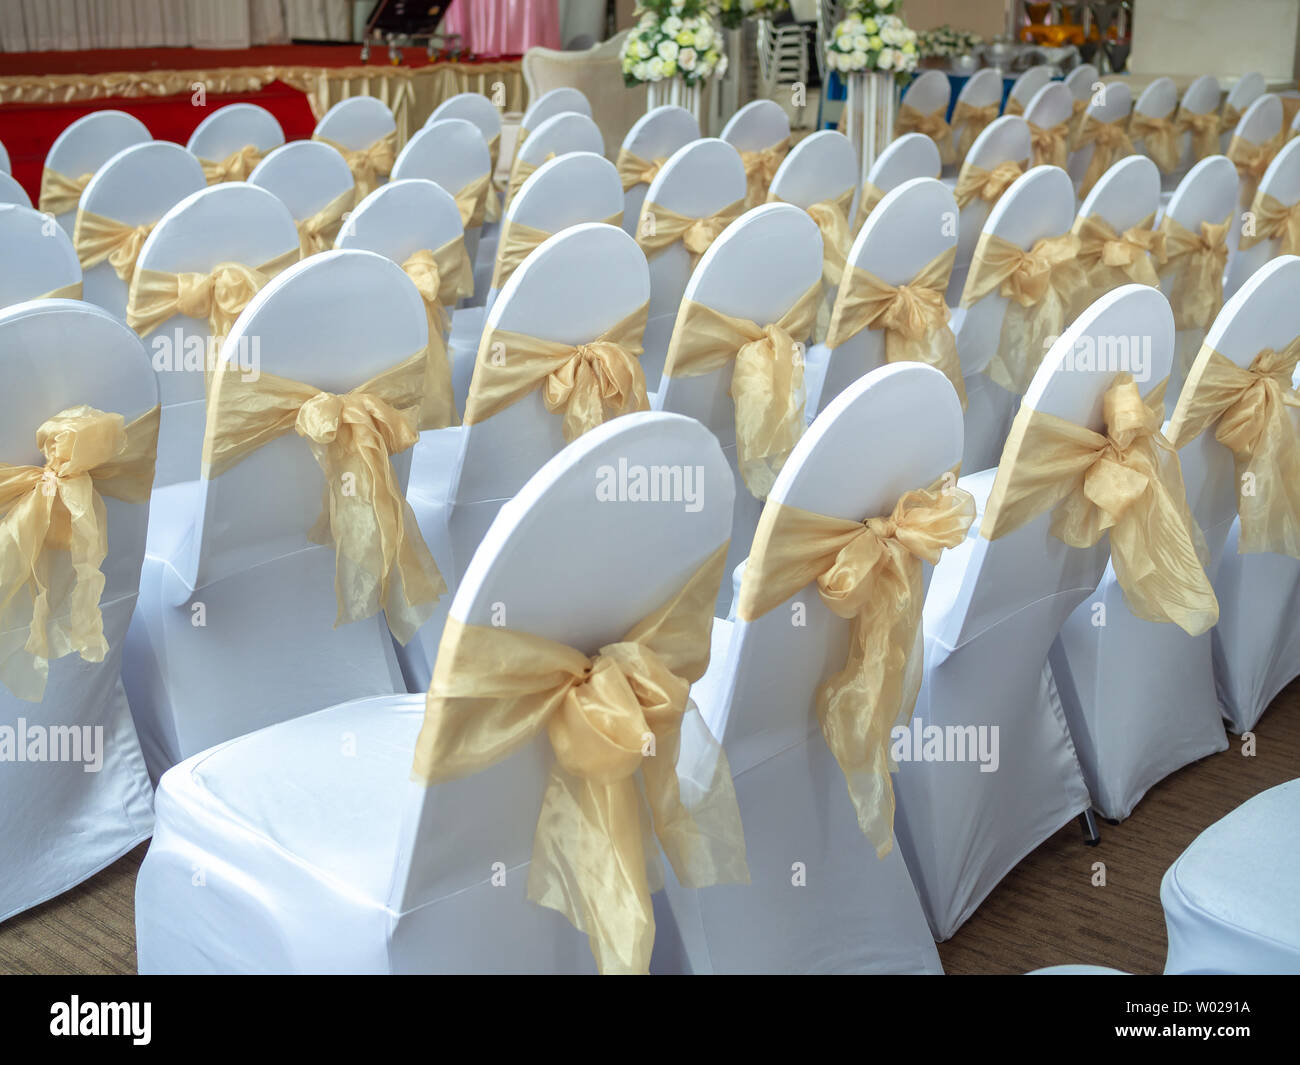 Reihen von schönen weiß und sauber Hochzeit Stühle mit gold Bänder in  Hochzeit gehalten Stockfotografie - Alamy